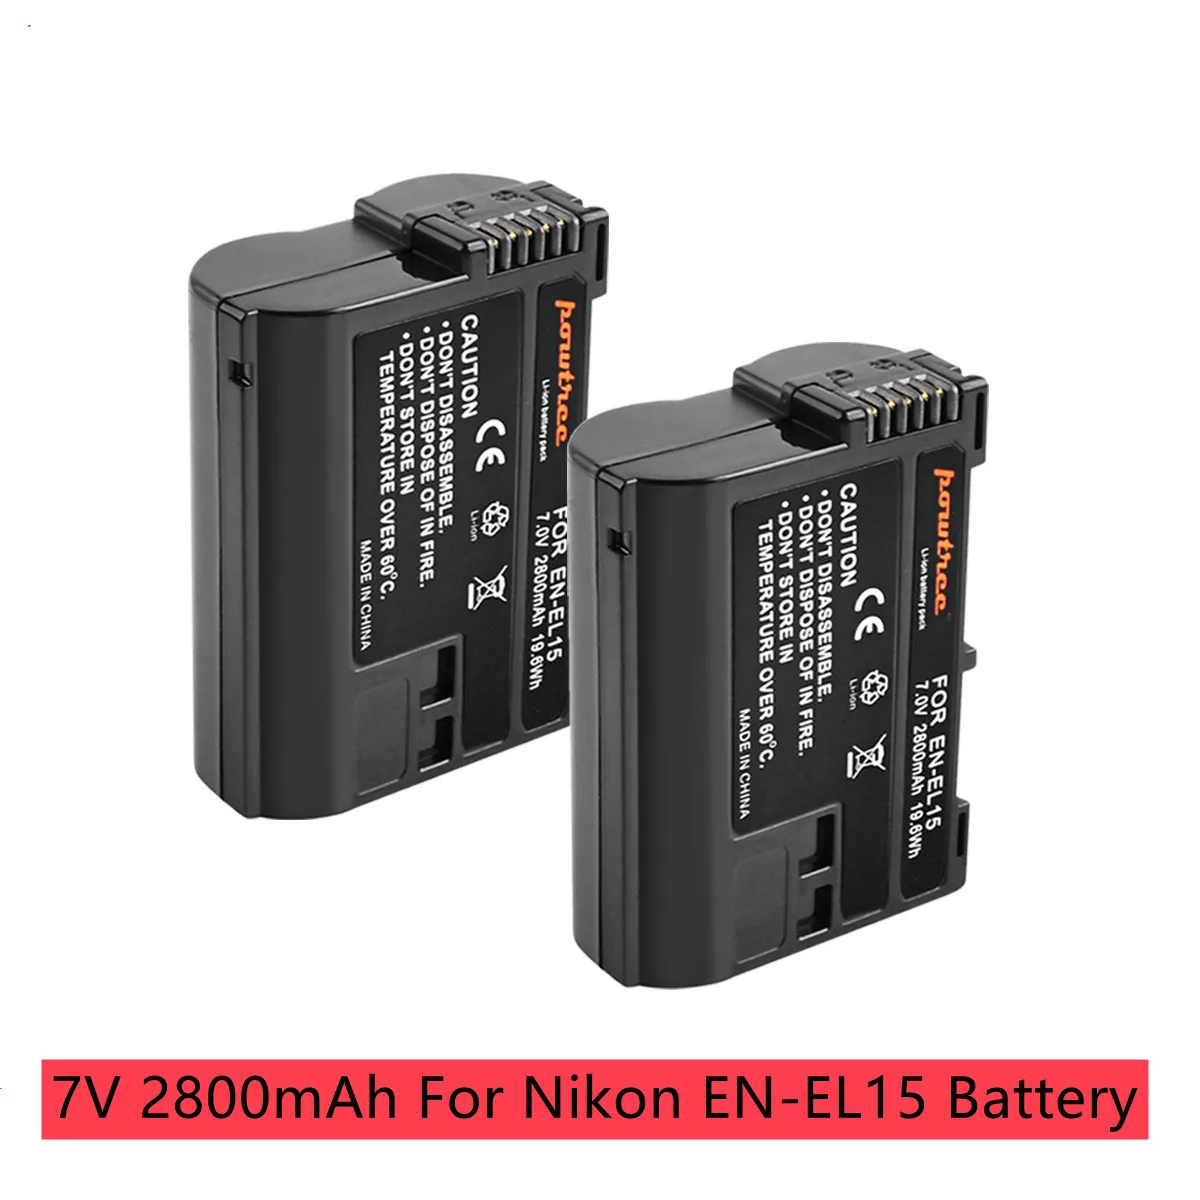 

EN-EL15 EN EL15a Camera Battery 7V 2800mAh For Nikon d750 d7200 d7500 d850 d7100 d610 d500, MH-25a d7000 z6 Replacement Battery